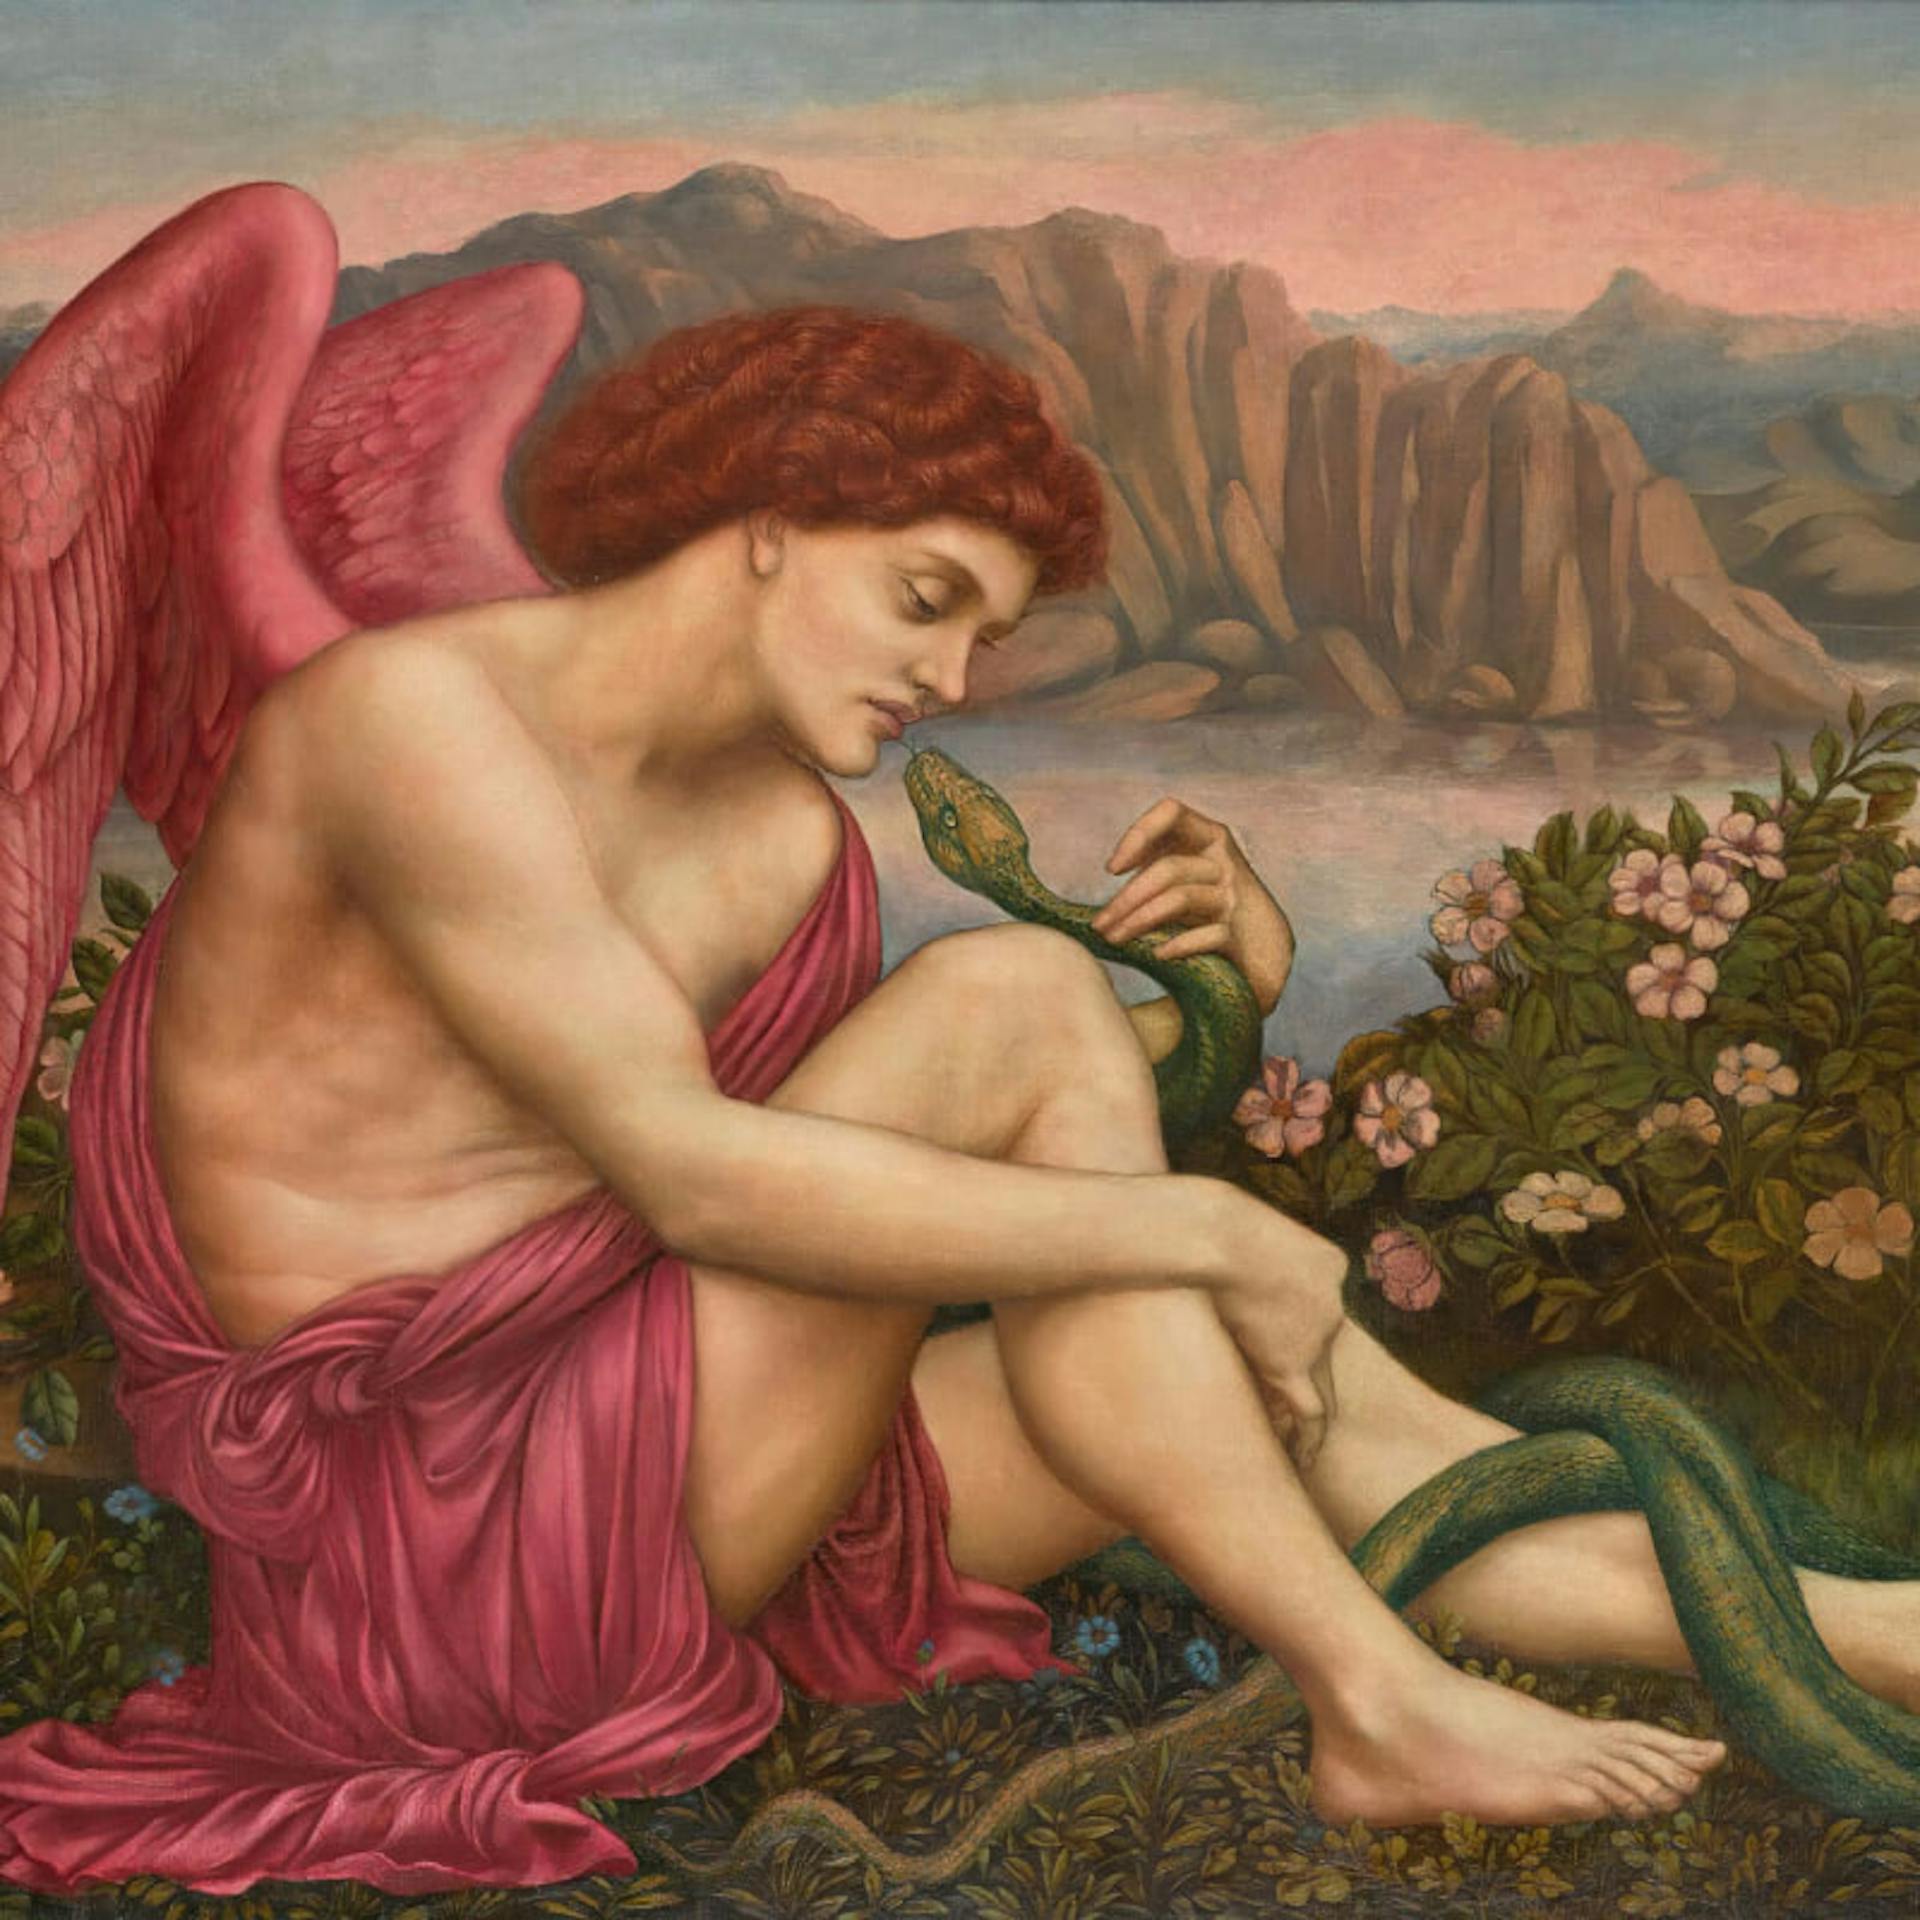 Art portraying an angel kissing a serpent.